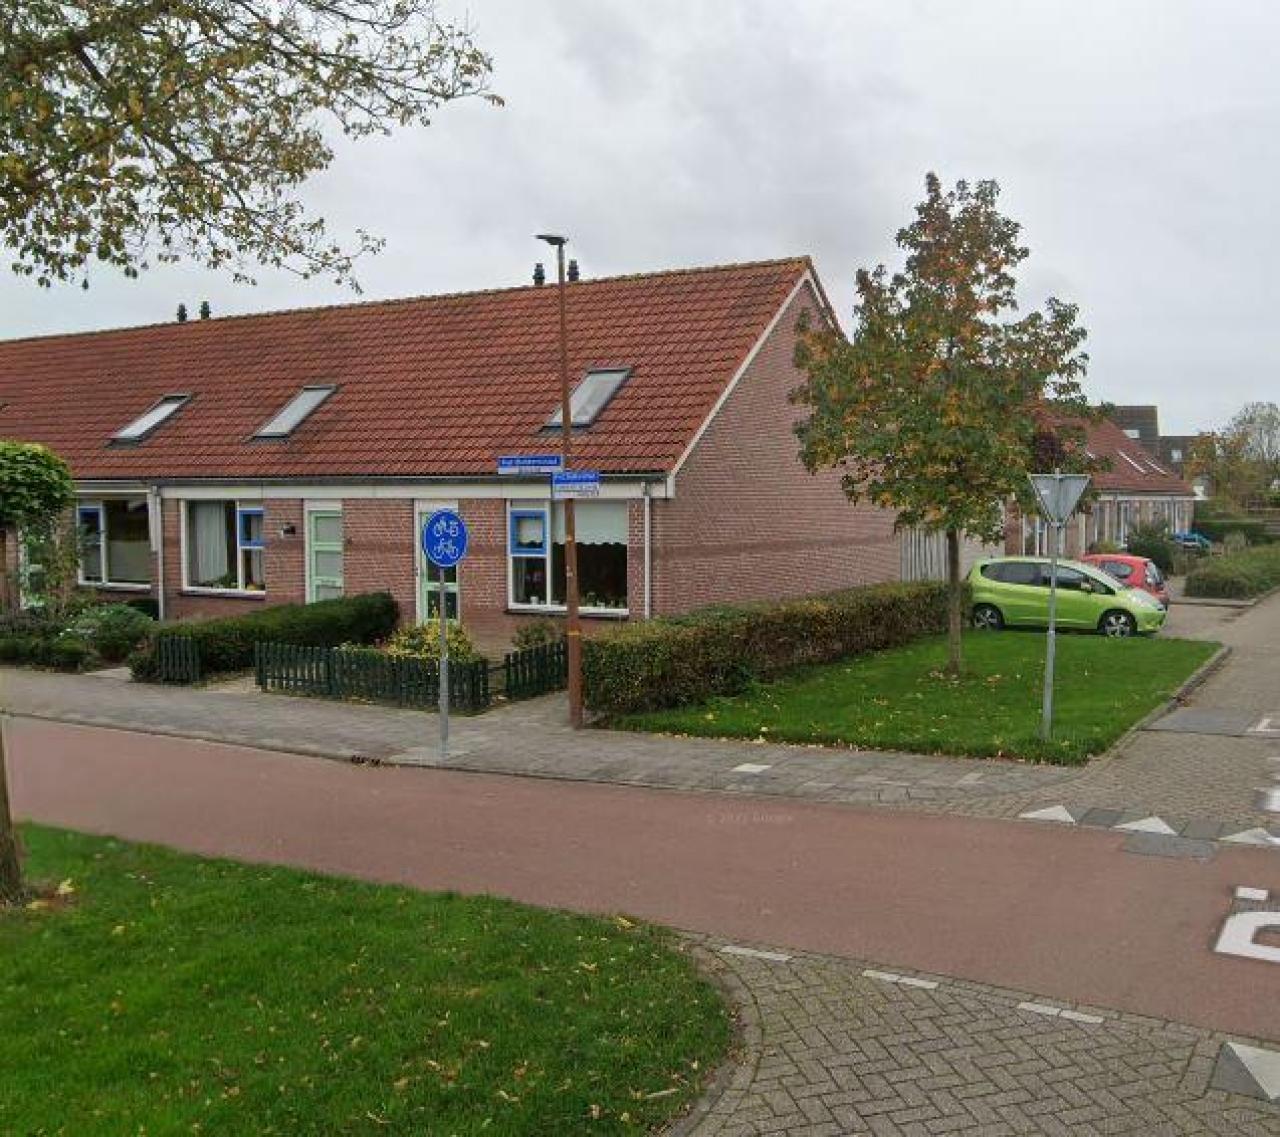 Piet Blokkerstraat 36, 1742 RT Schagen, Nederland